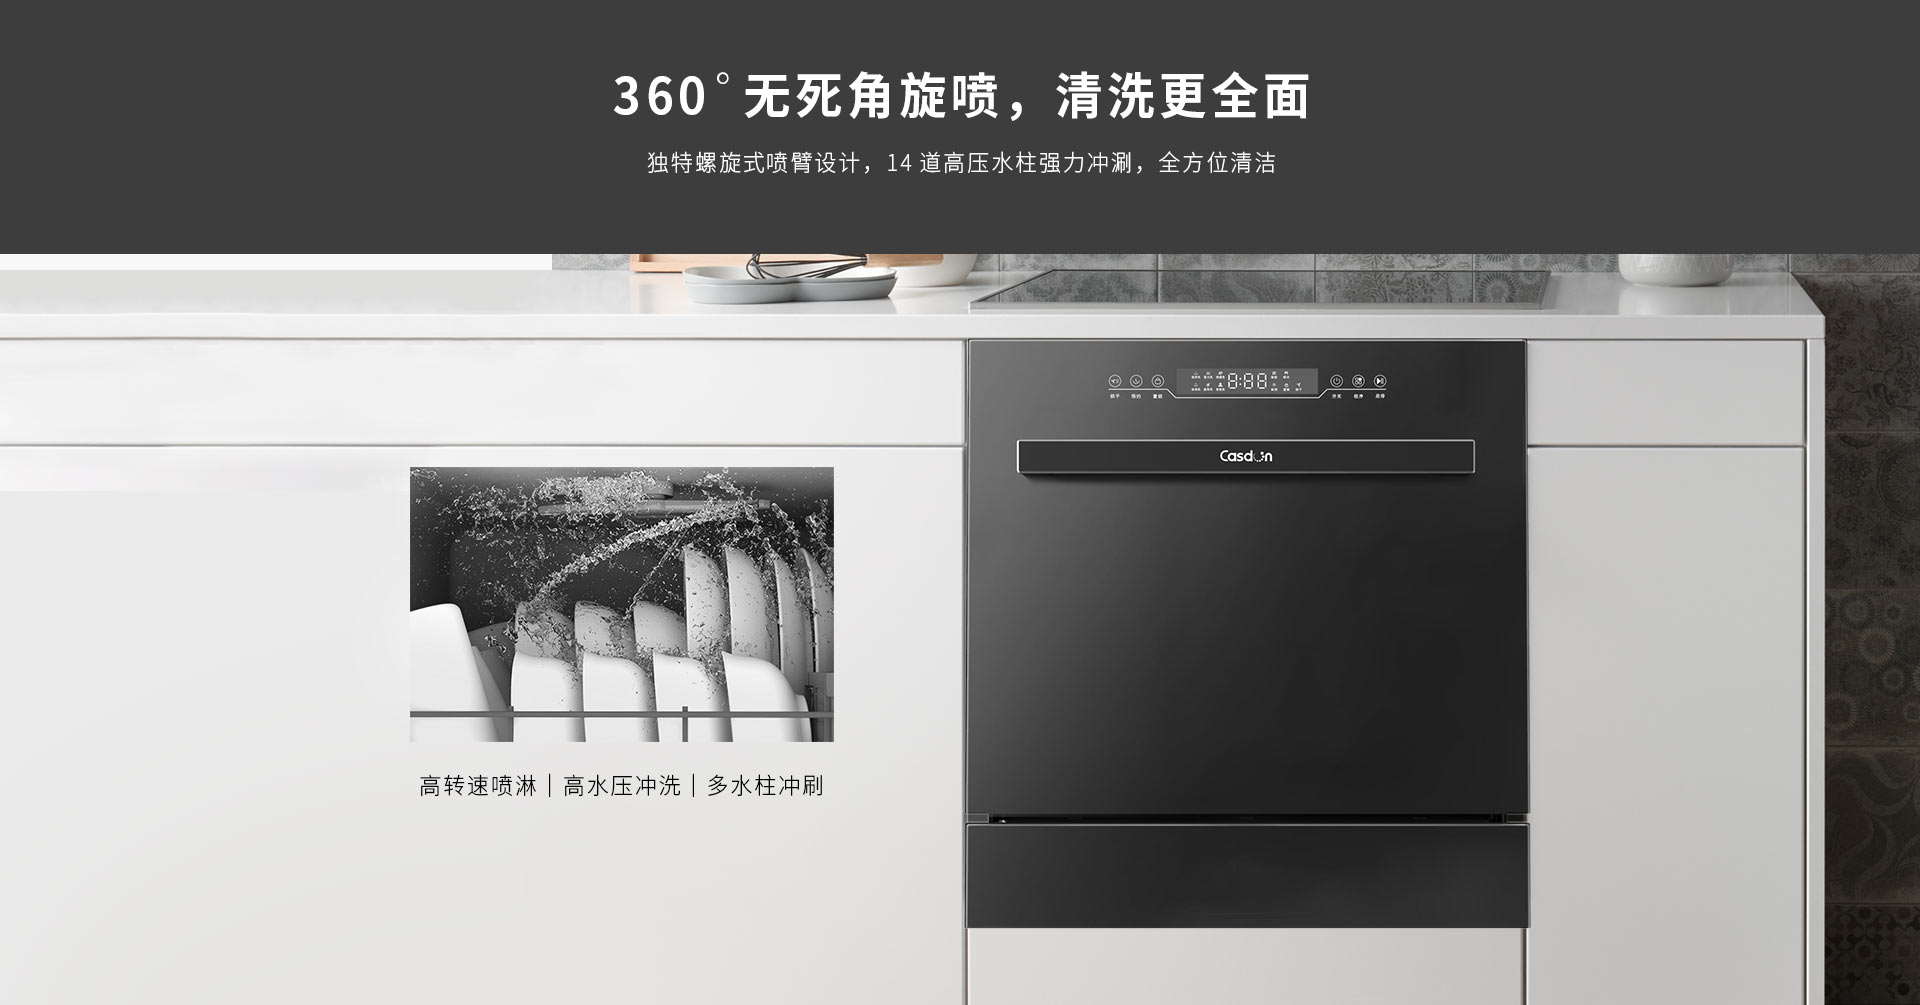 嵌入式洗碗机sr80di-ev8pc端_05.jpg